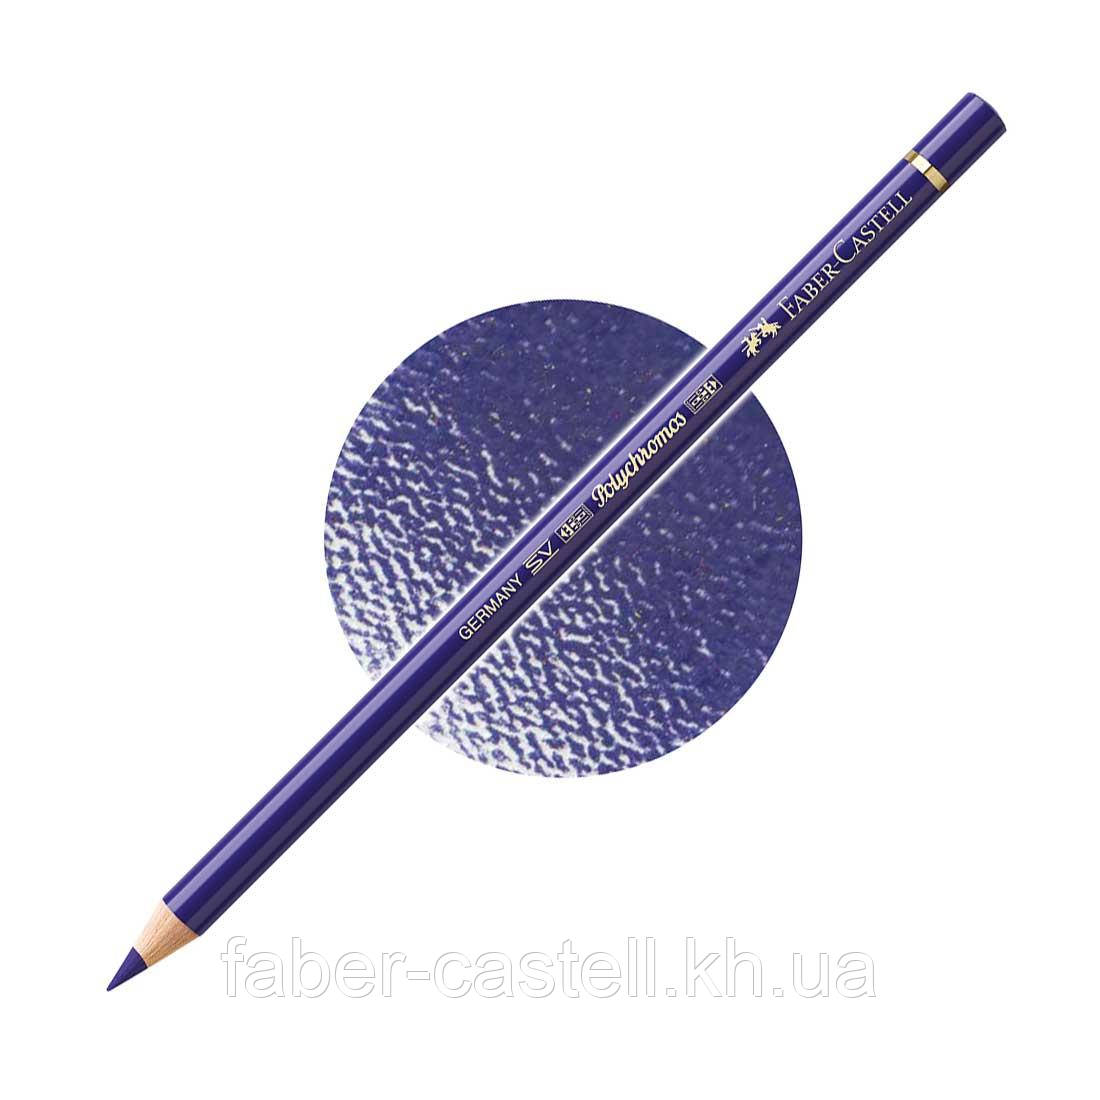 Олівець кольоровий Faber-Castell POLYCHROMOS колір фаянсовий синій №141 (Delft Blue), 110141